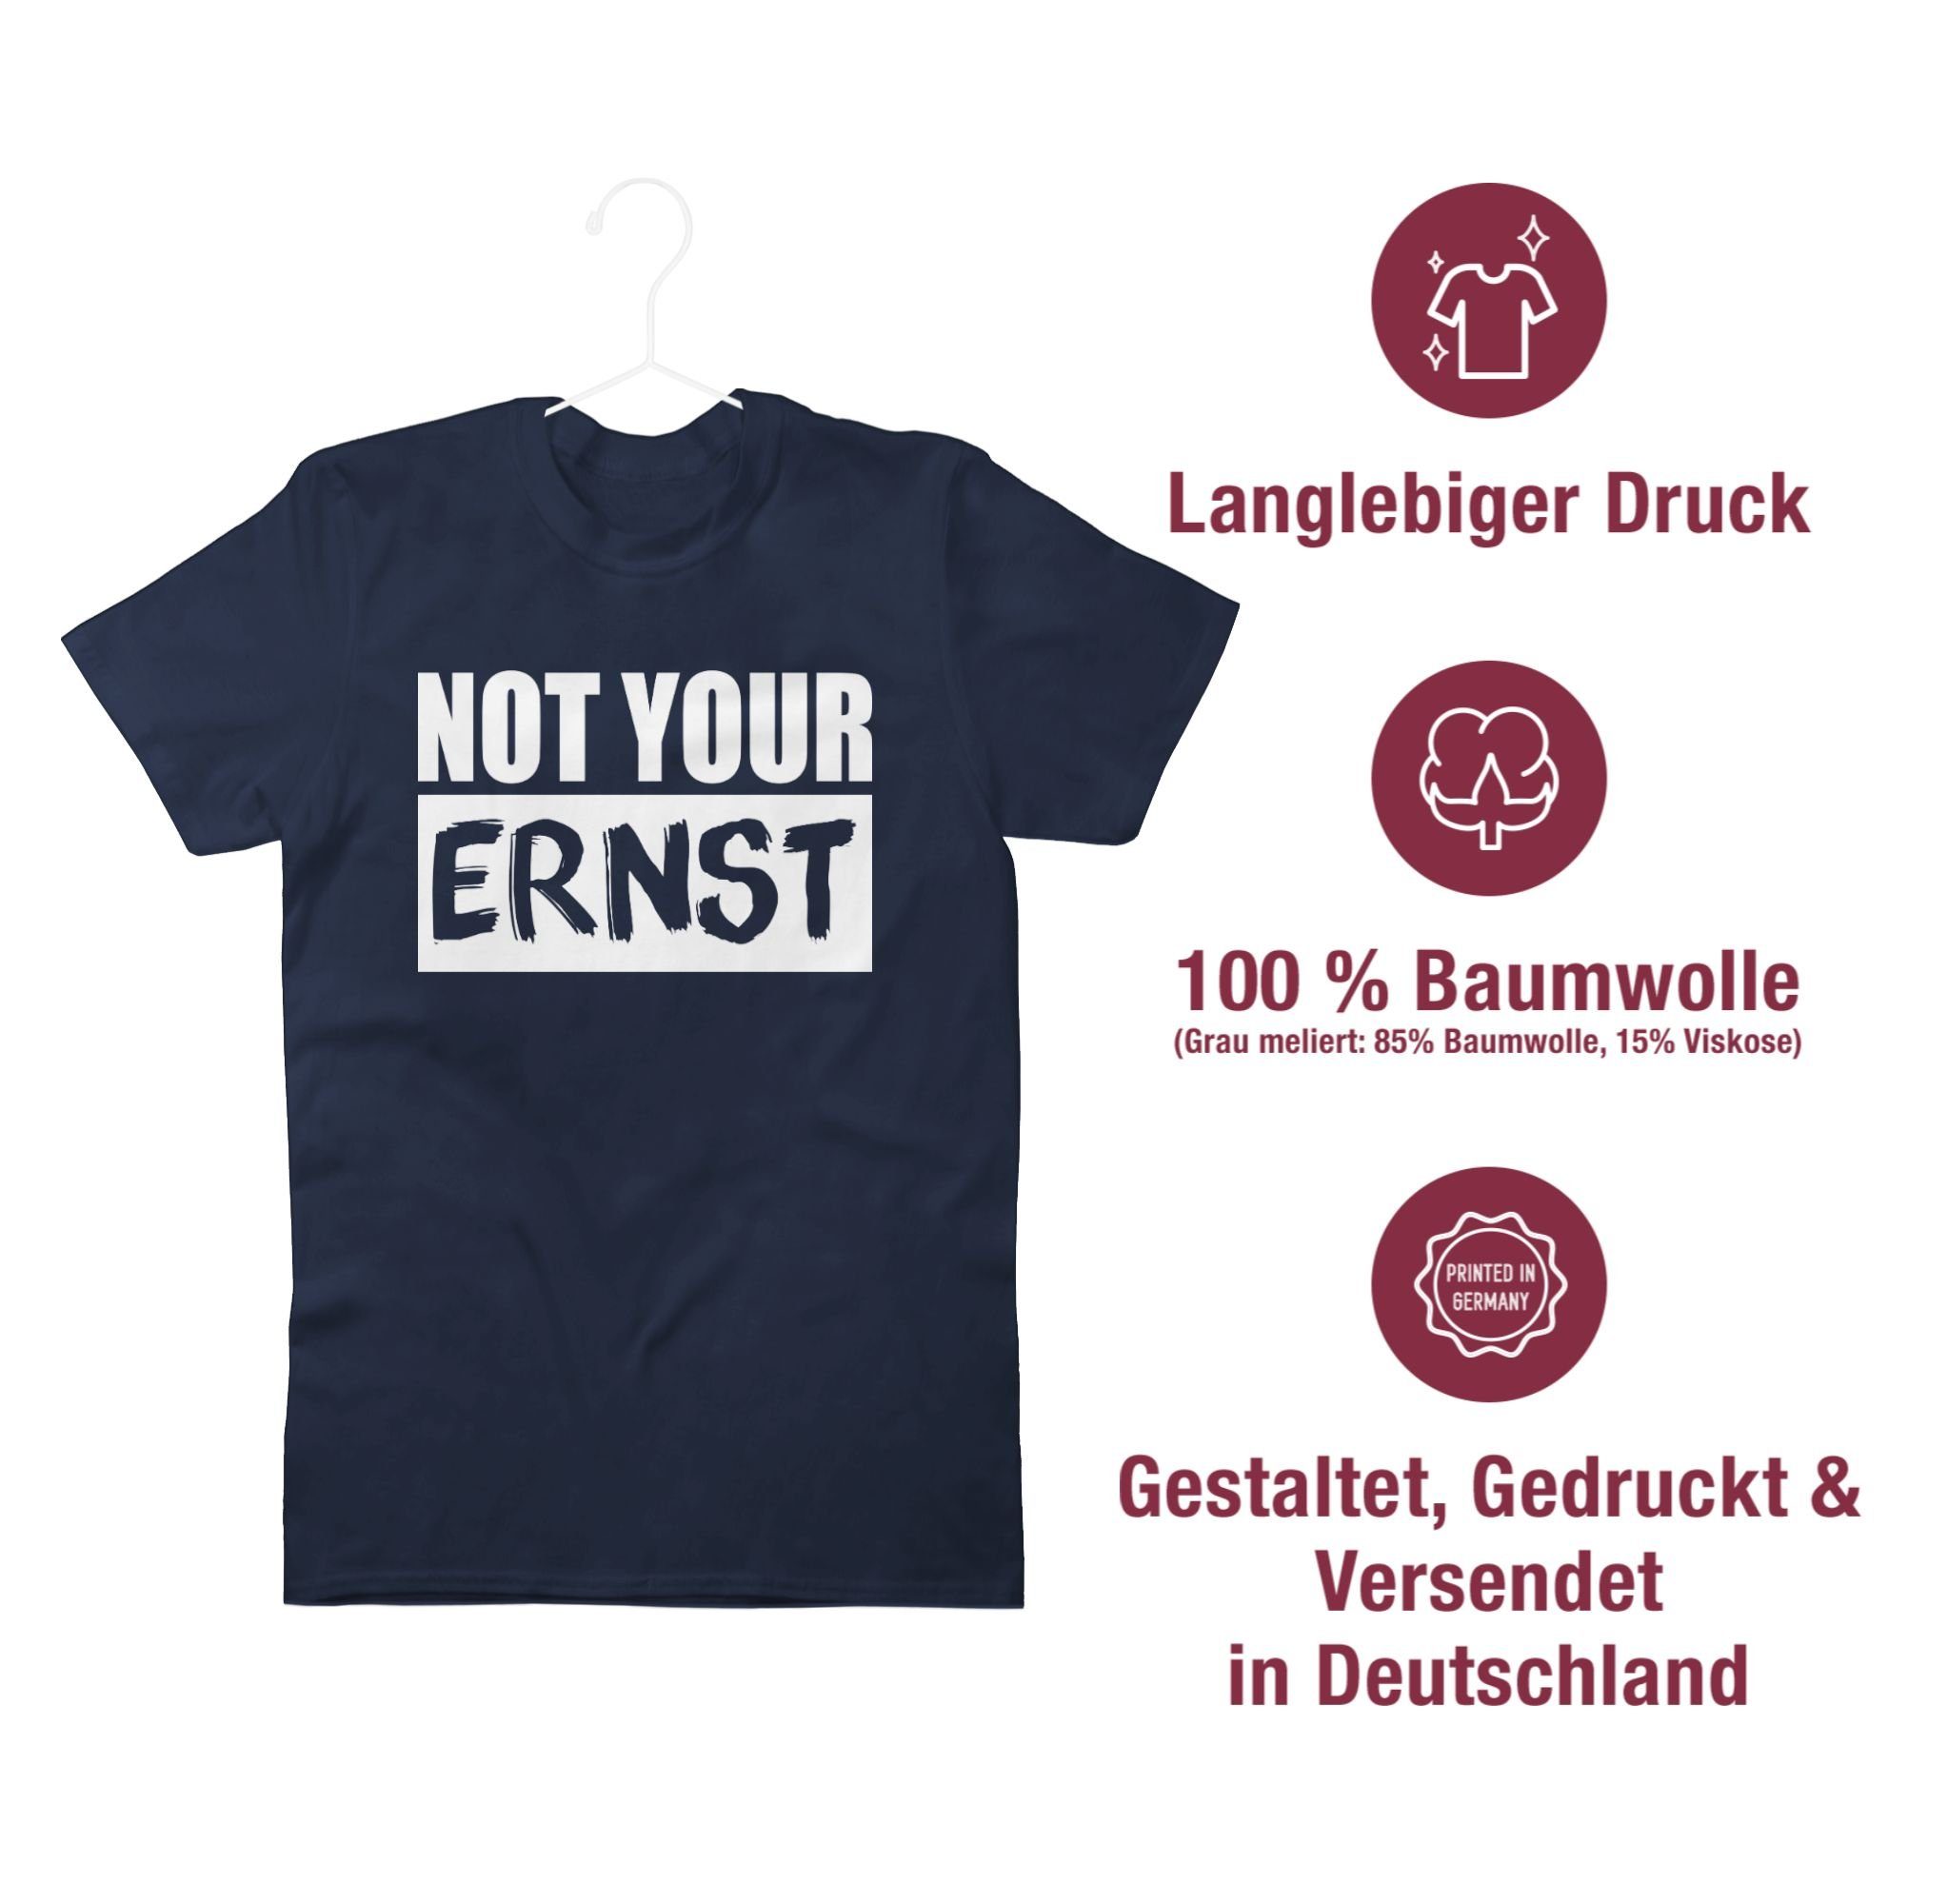 02 Statement your Not ERNST? Blau - T-Shirt Sprüche Shirtracer weiß Navy